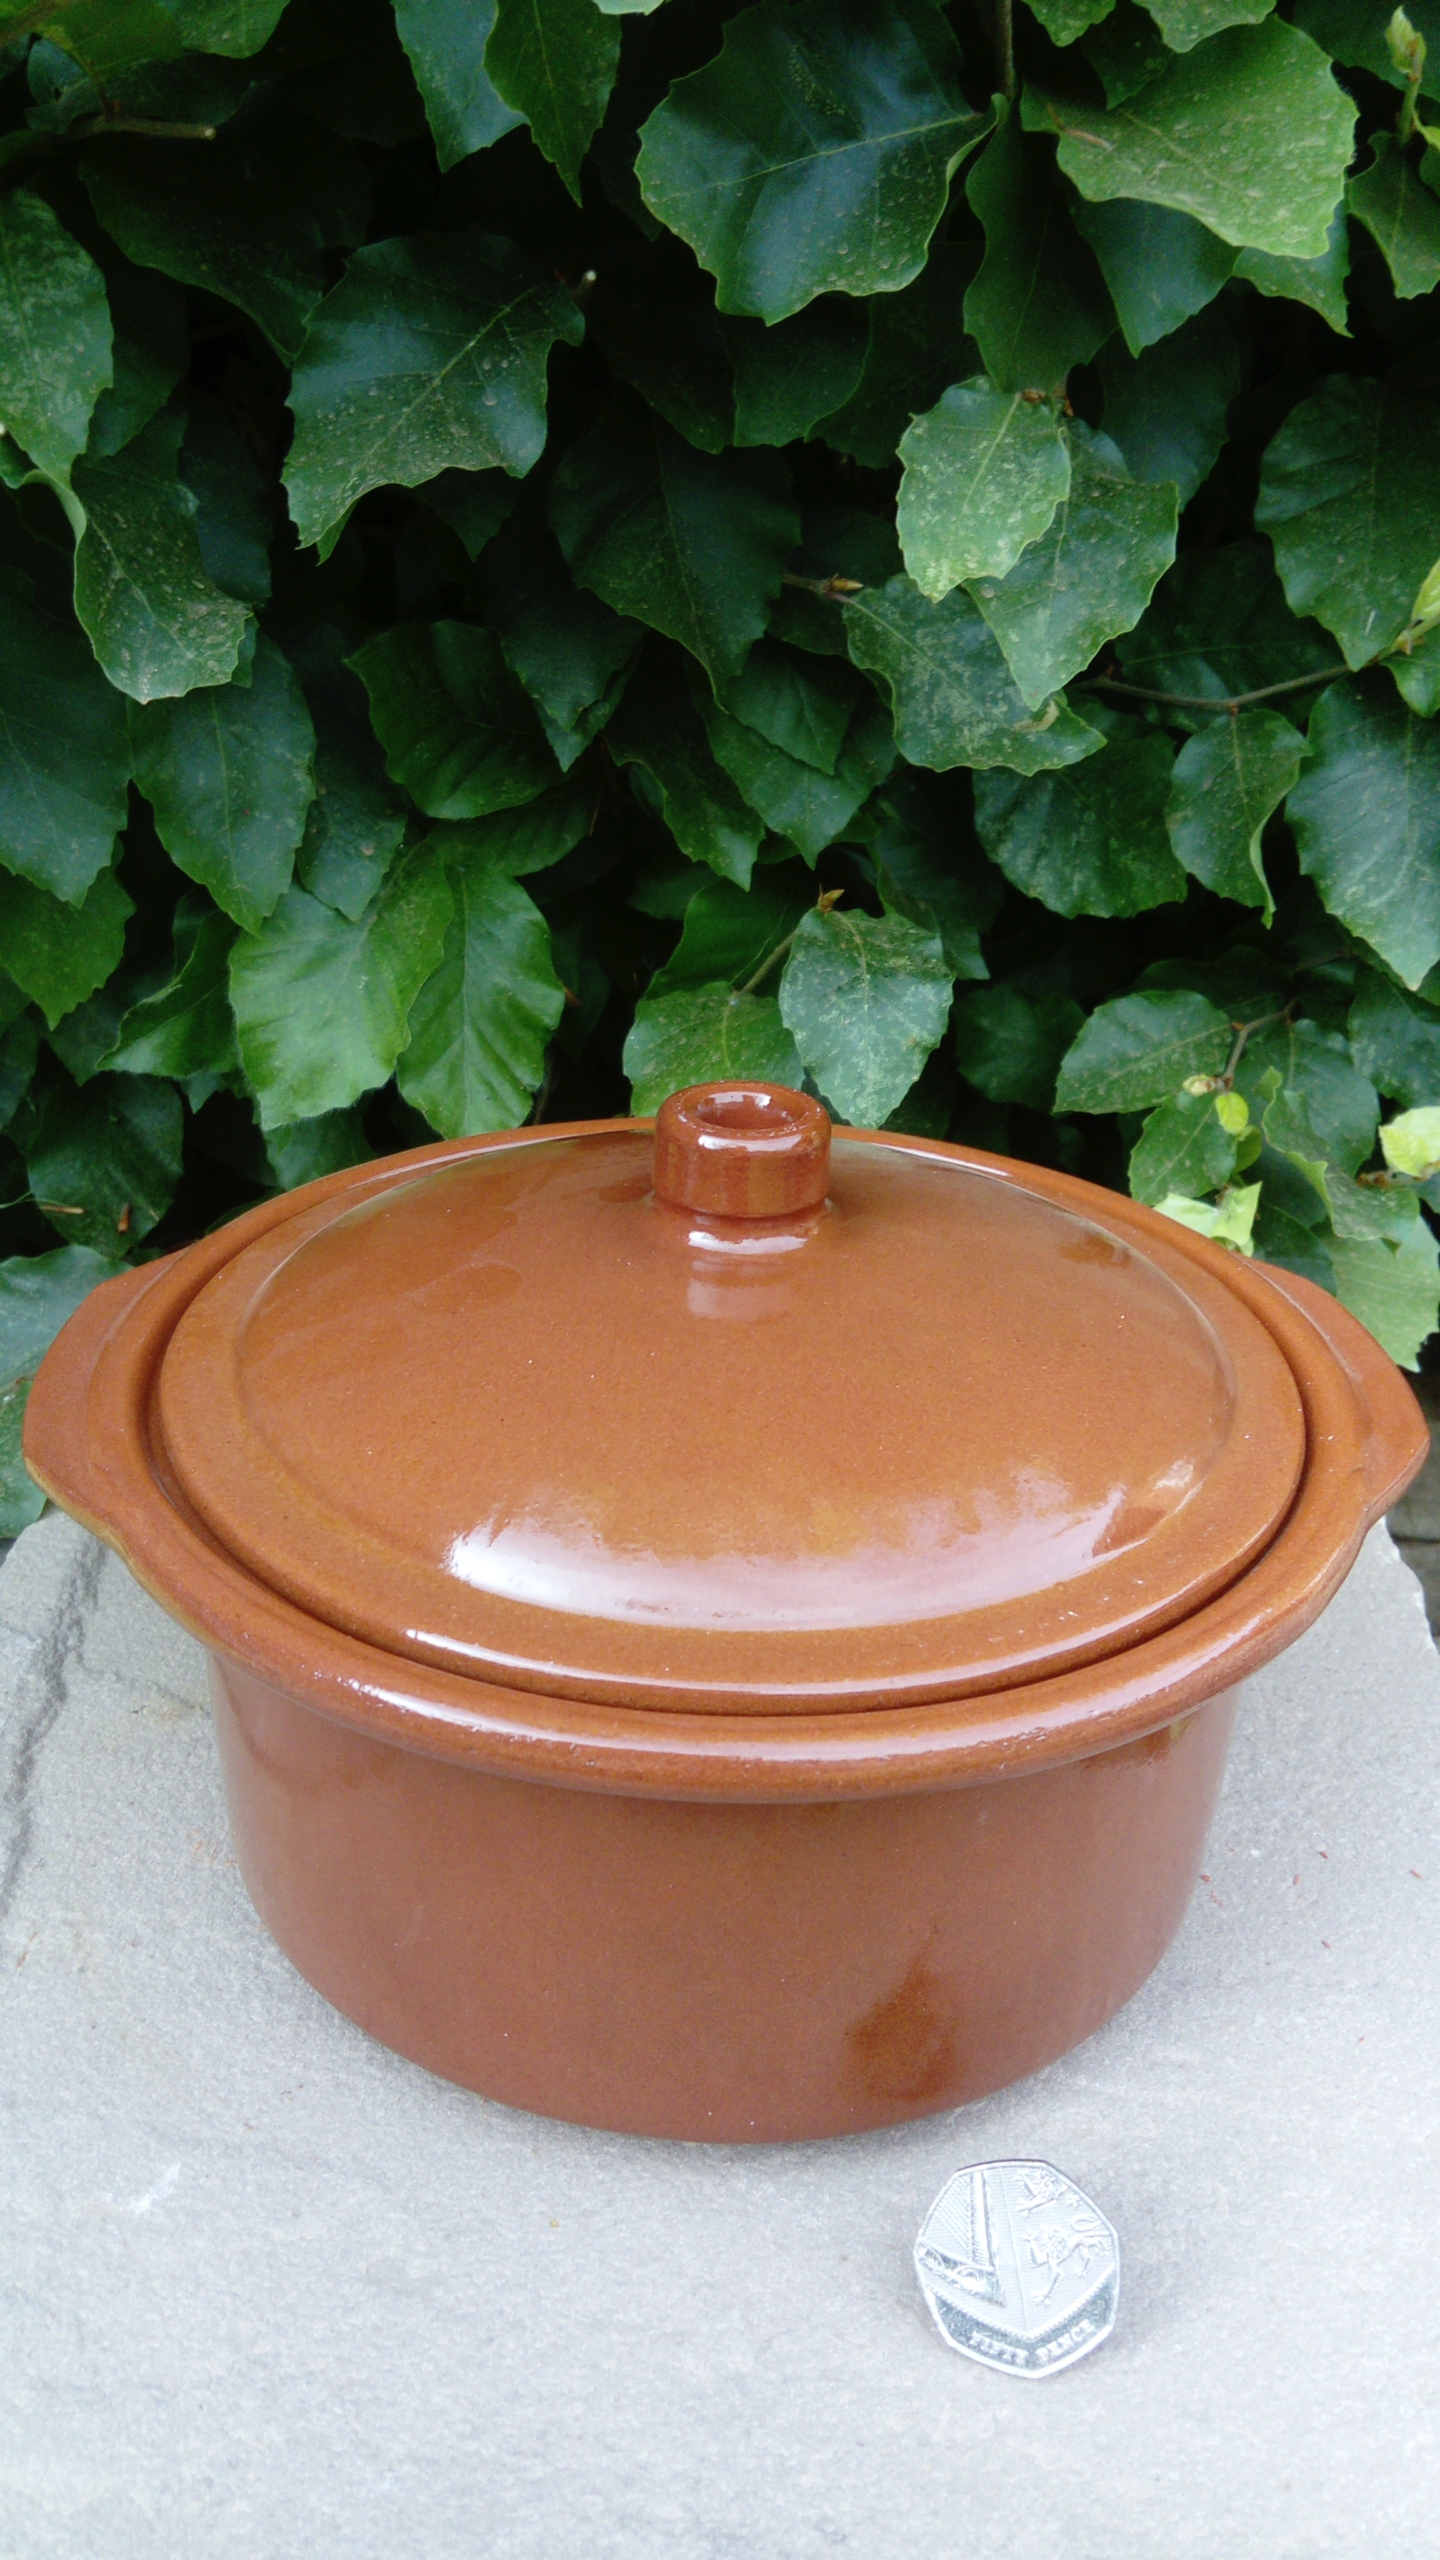 Glazed / Unglazed Spanish Cooking Pot/Cocotte - 4 sizes